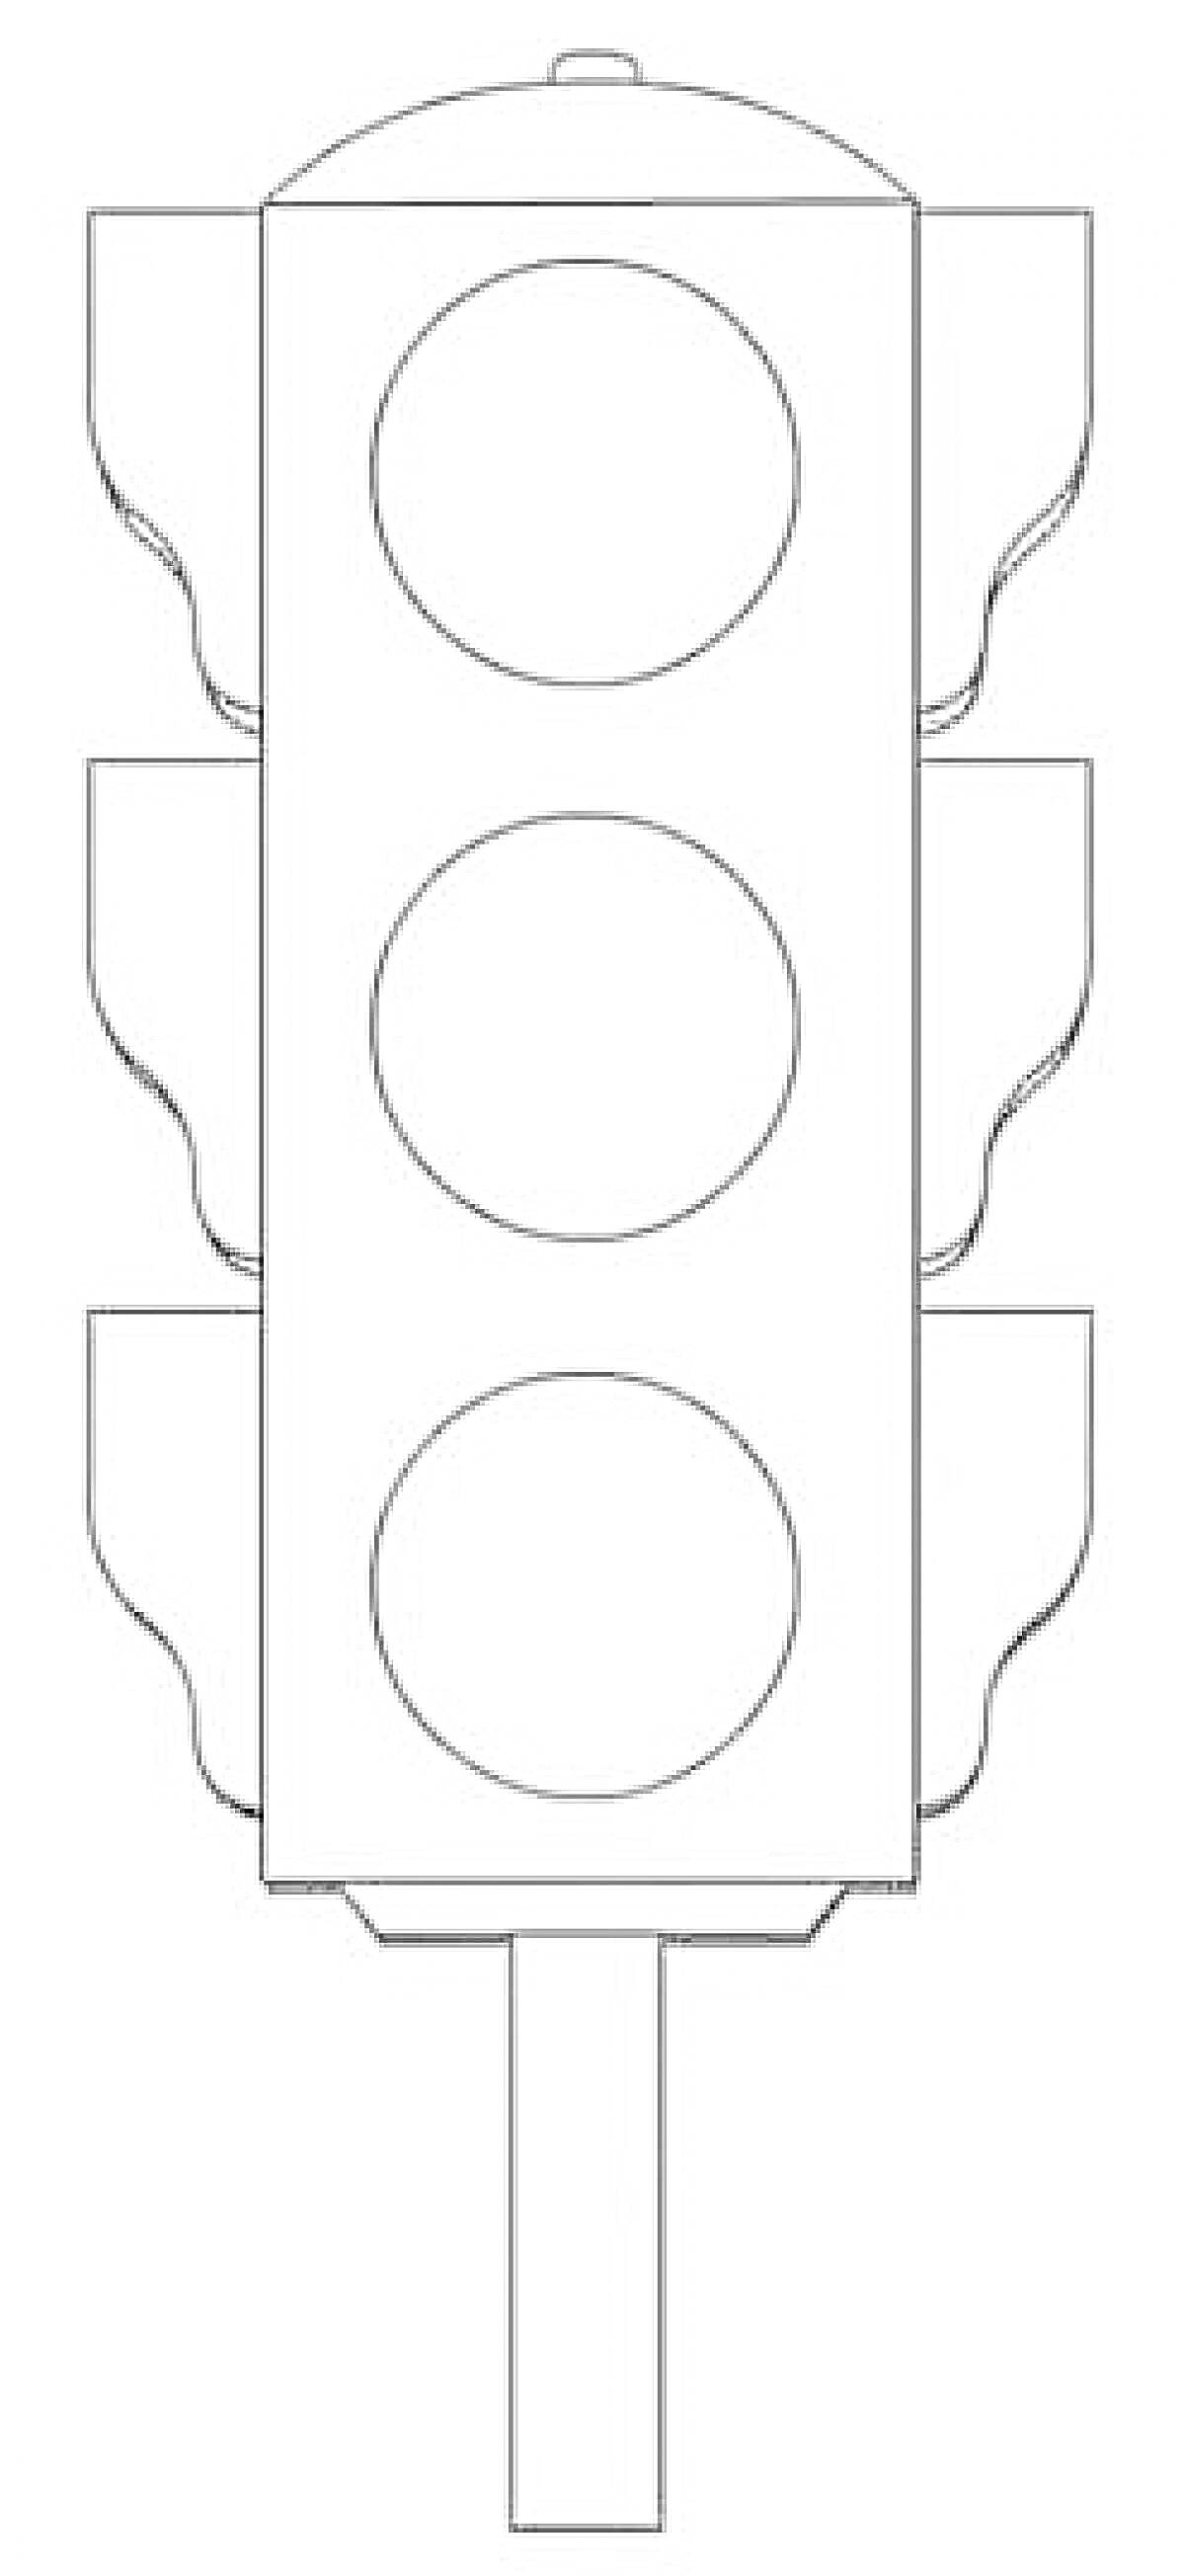 Раскраска Раскраска светофора с тремя круглыми лампами и вертикальным столбом